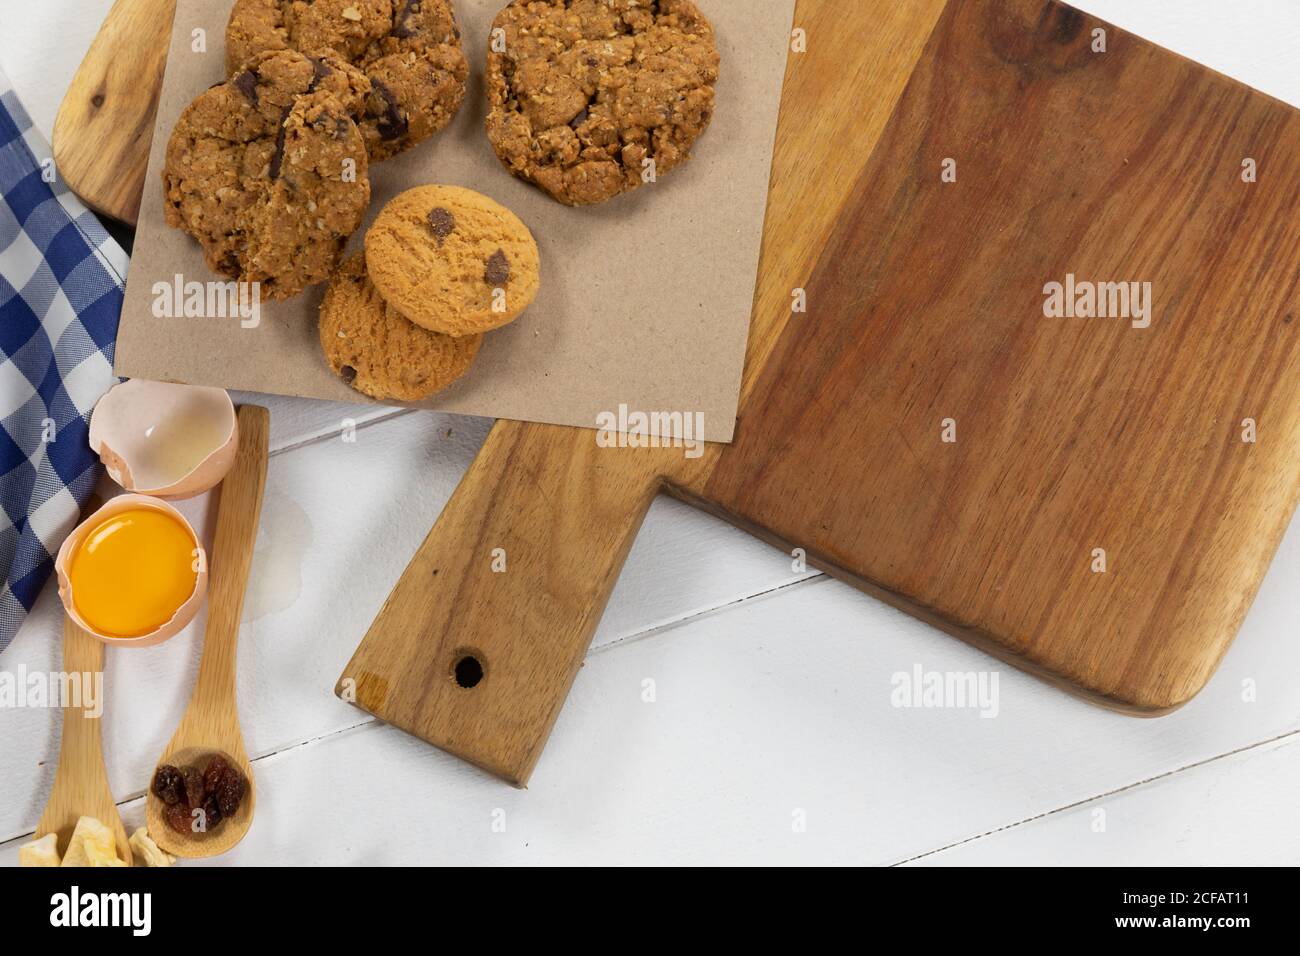 Vista di biscotti, cucchiai di frutta secca e uova su superficie di legno bianco con tovaglia Foto Stock